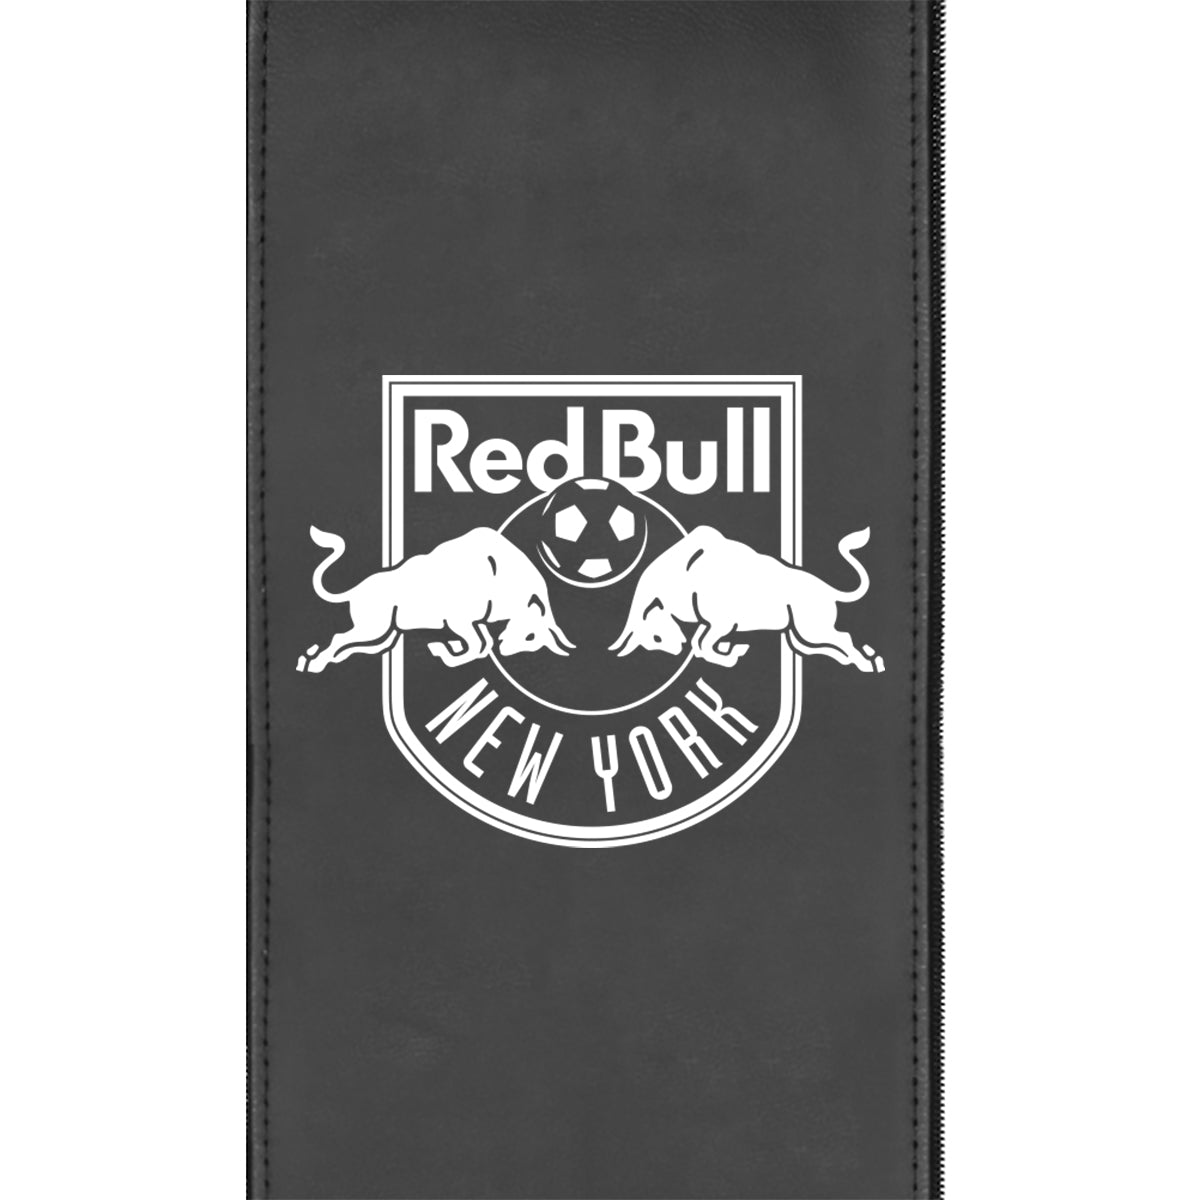 Swivel Bar Stool 2000 with New York Red Bulls Alternate Logo